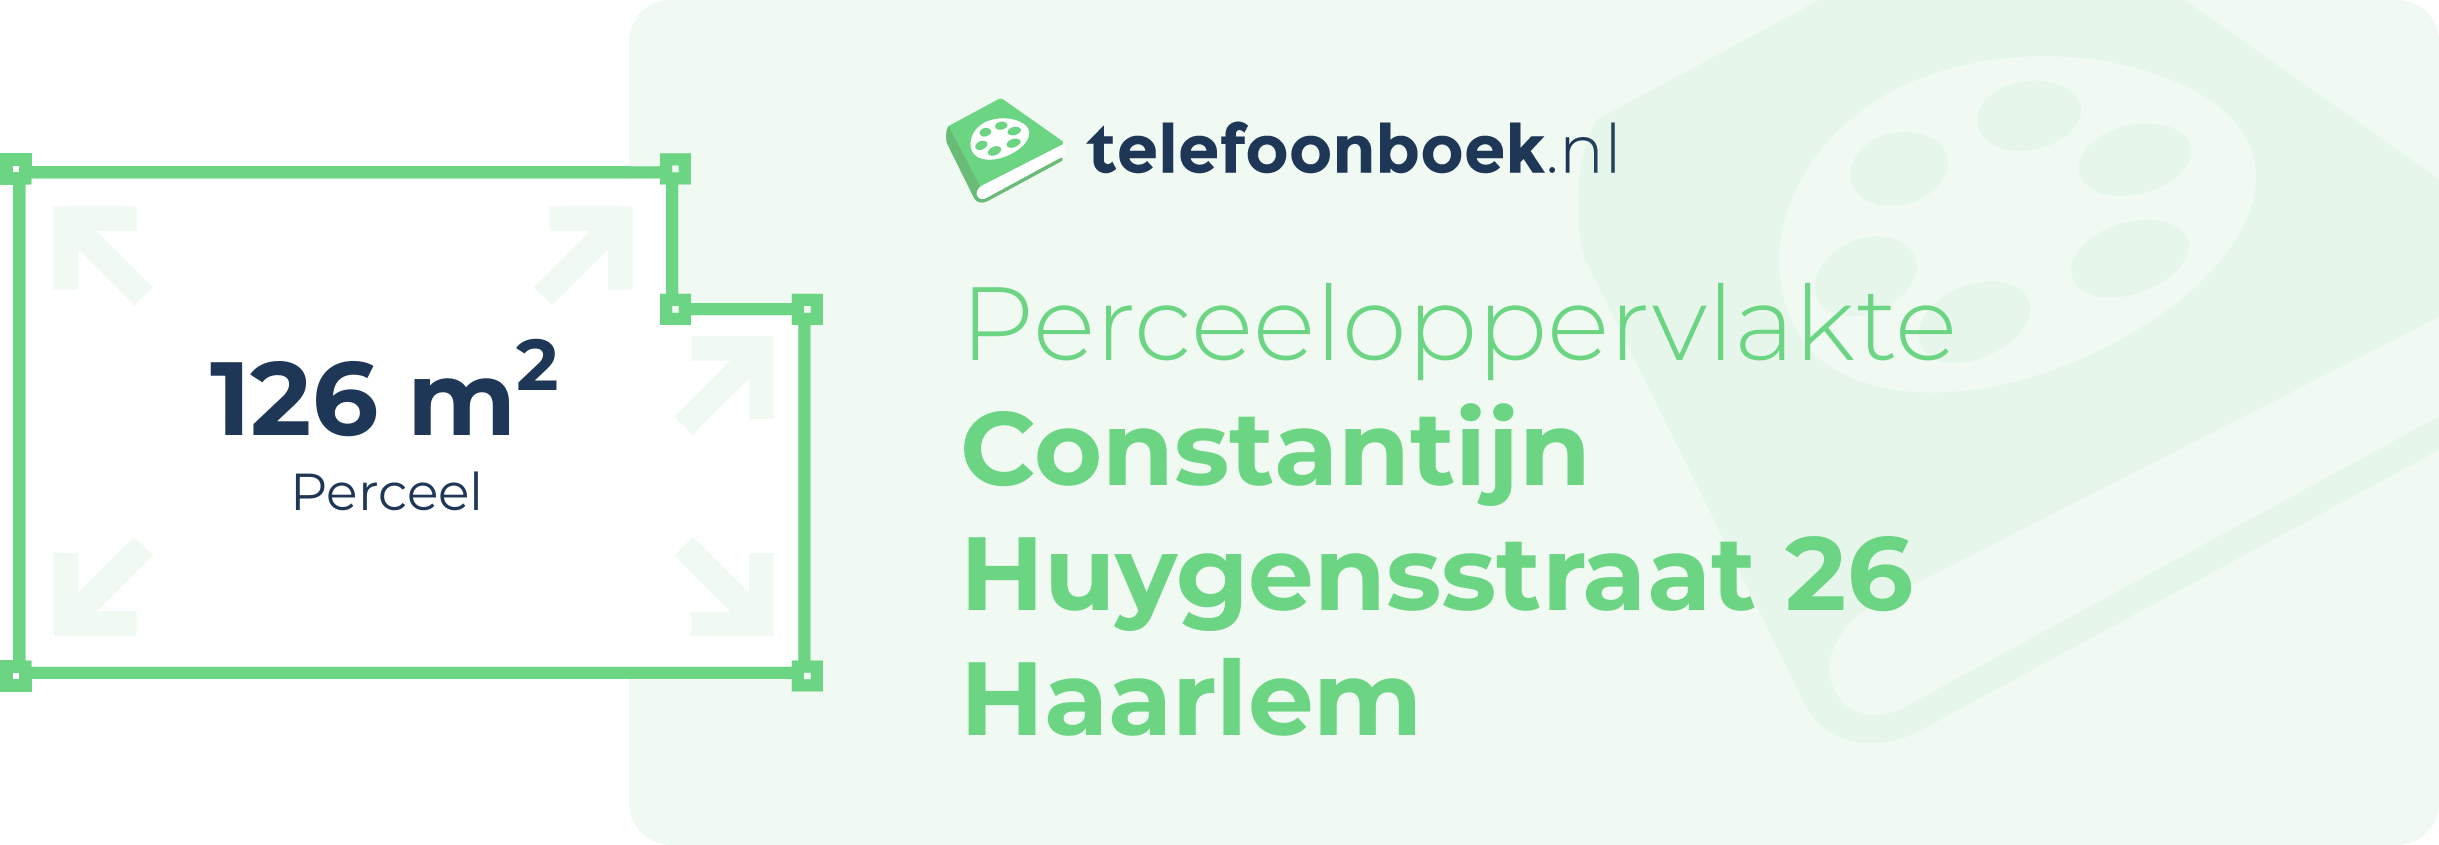 Perceeloppervlakte Constantijn Huygensstraat 26 Haarlem